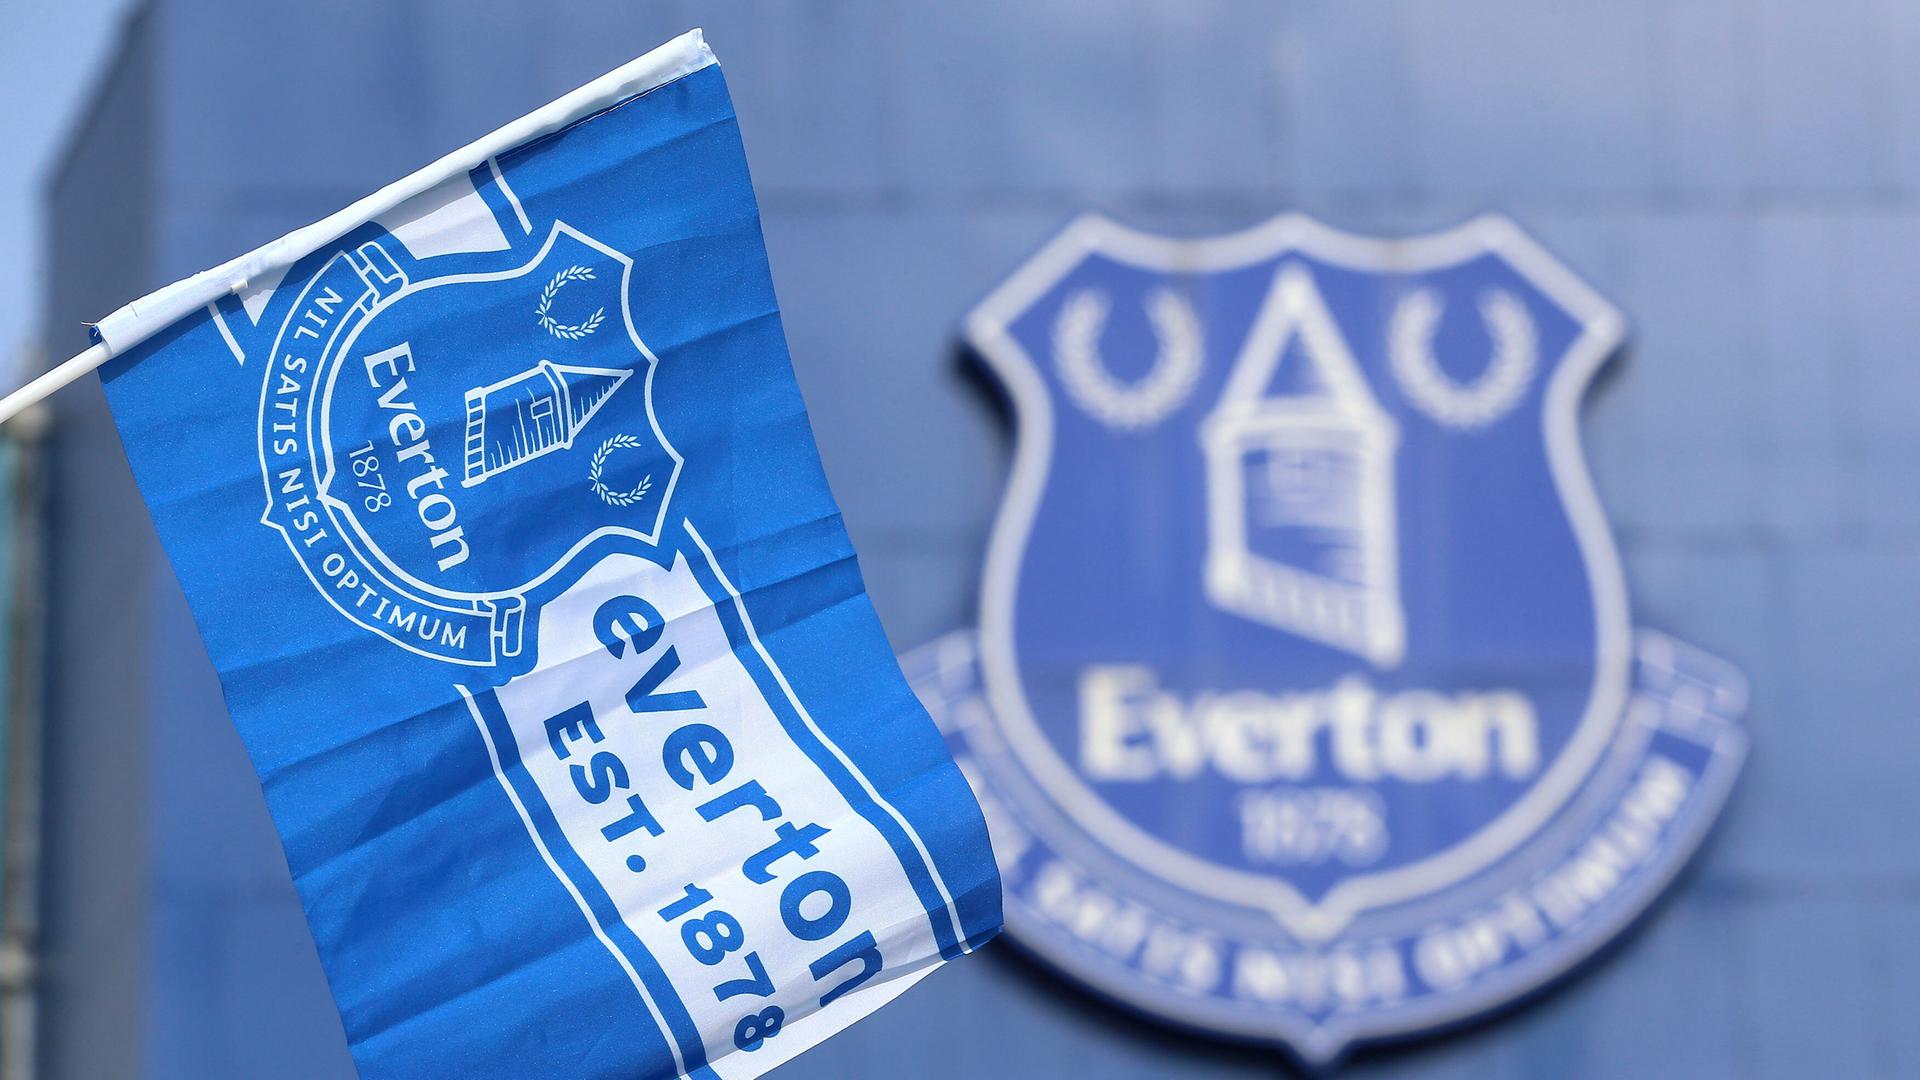 Flagge des englischen Fußball-Klubs FC Everton.